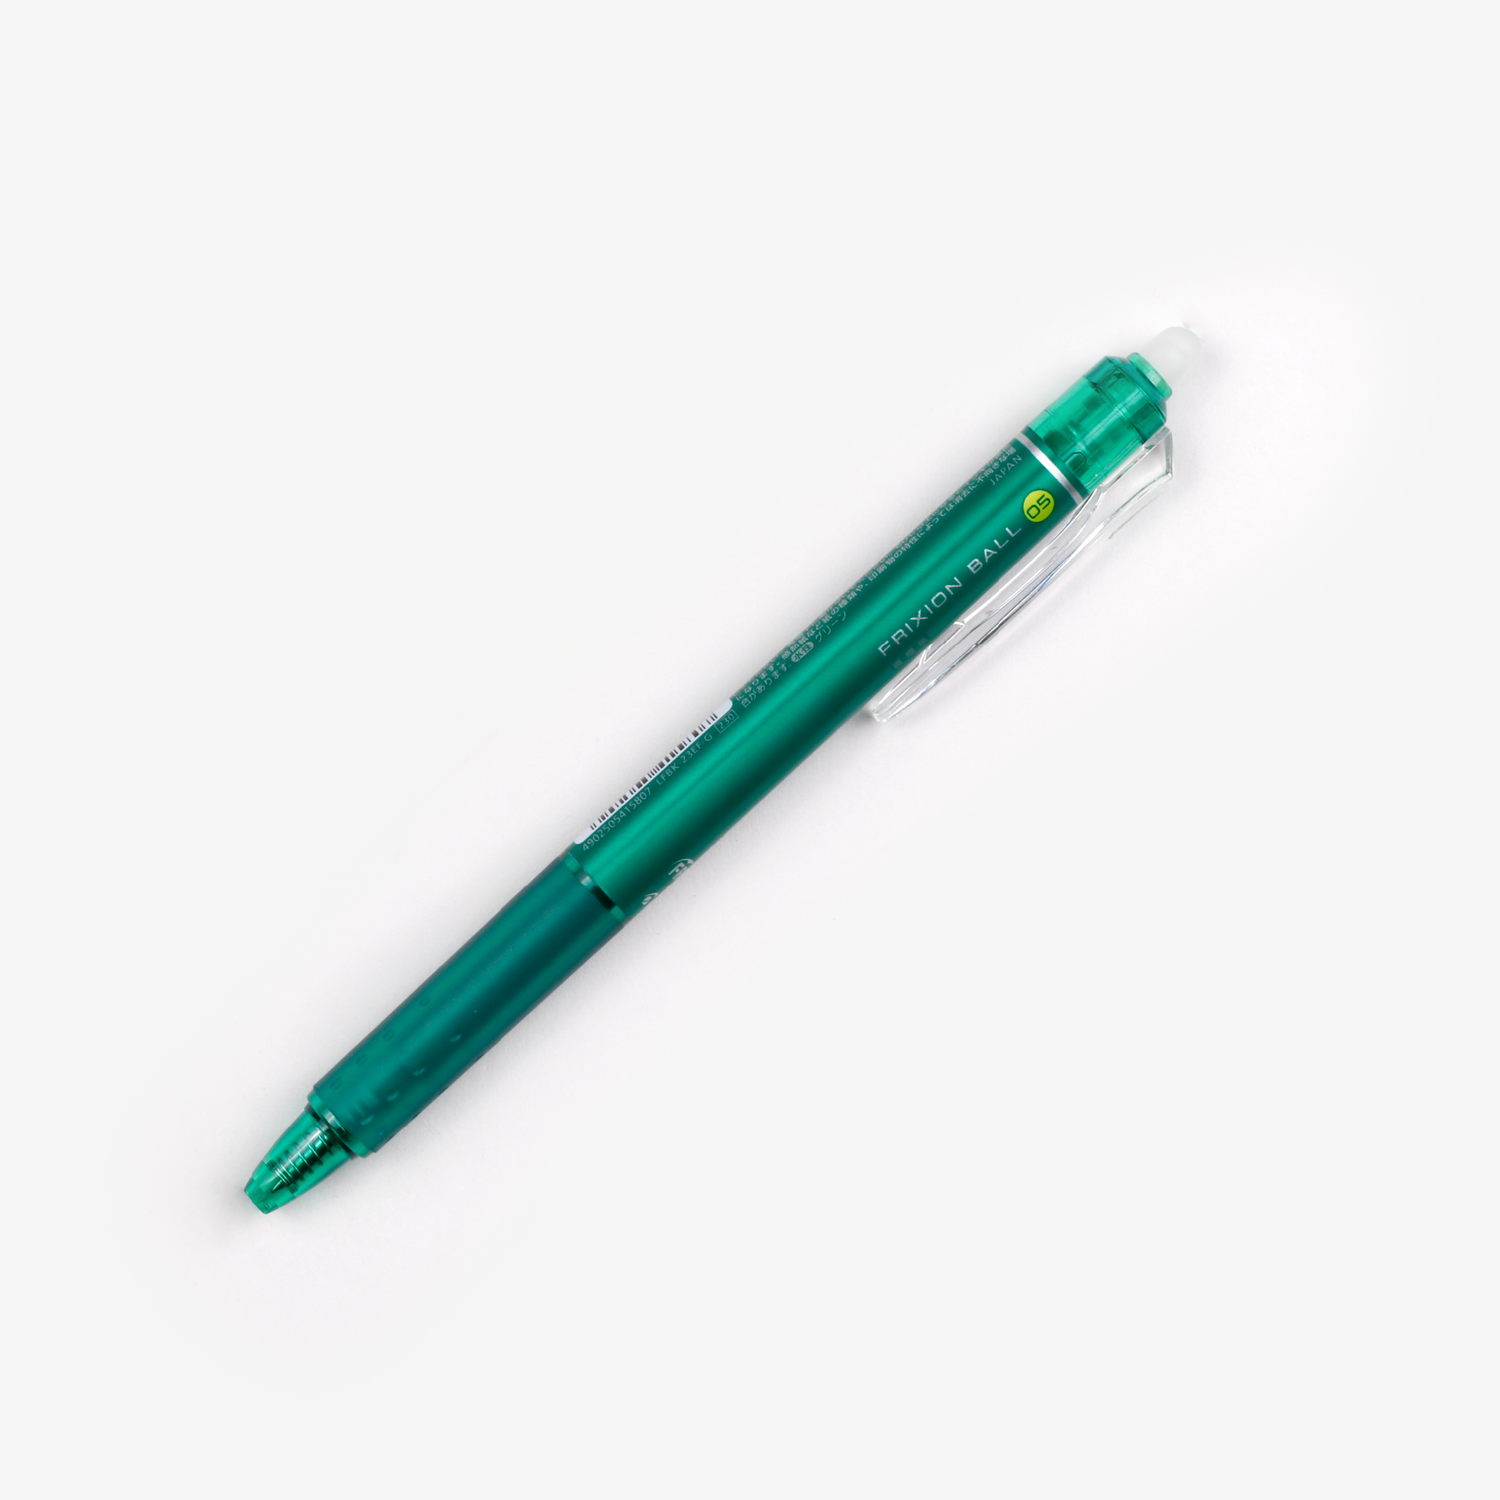 Pilot FriXion Ball Pen - 0.5 mm - Green